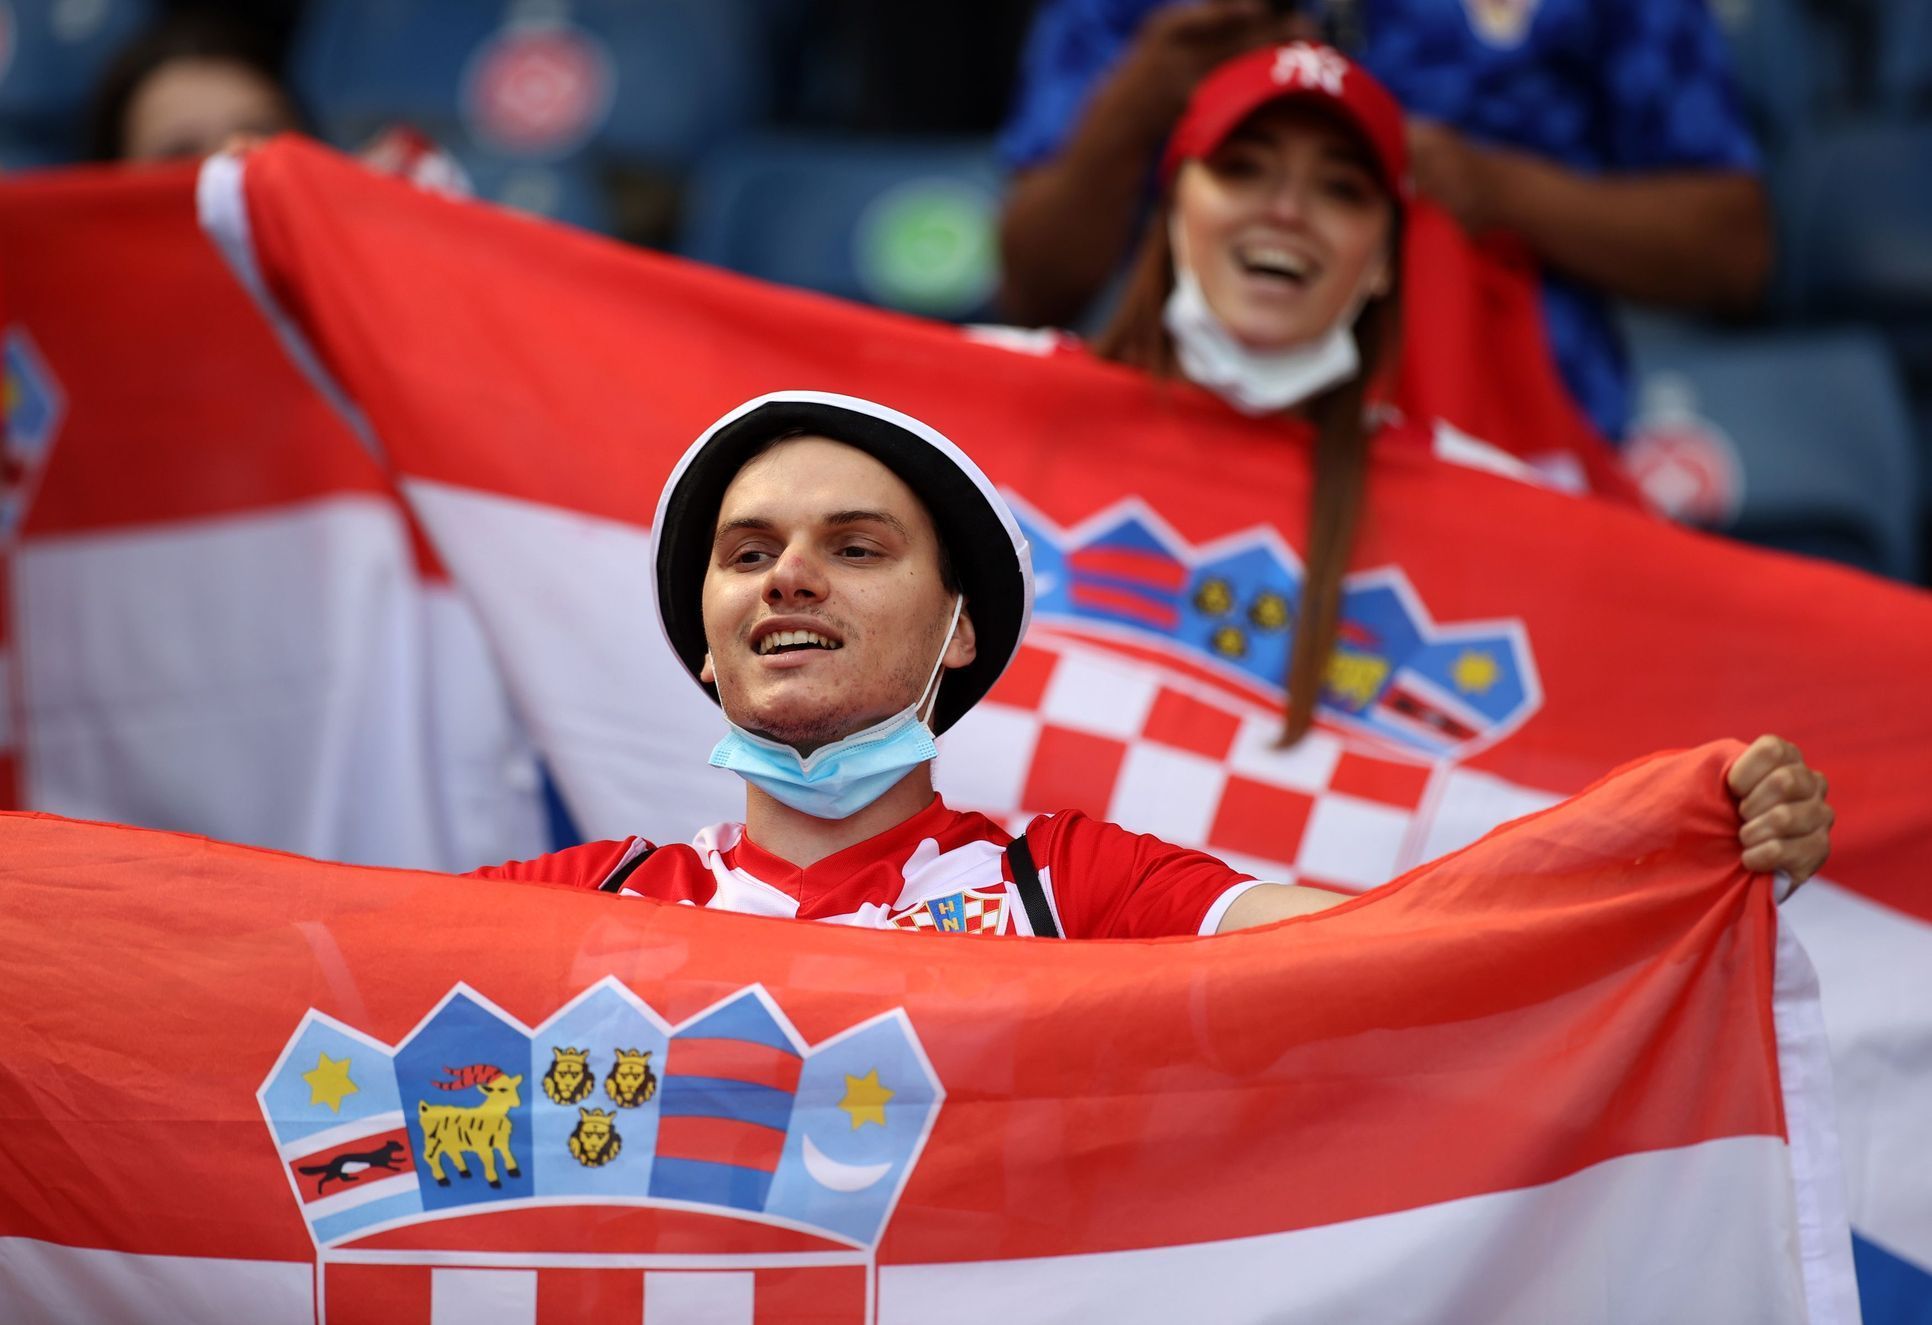 Chorvatští fanoušci na zápase Chorvatsko - Česko na ME 2020